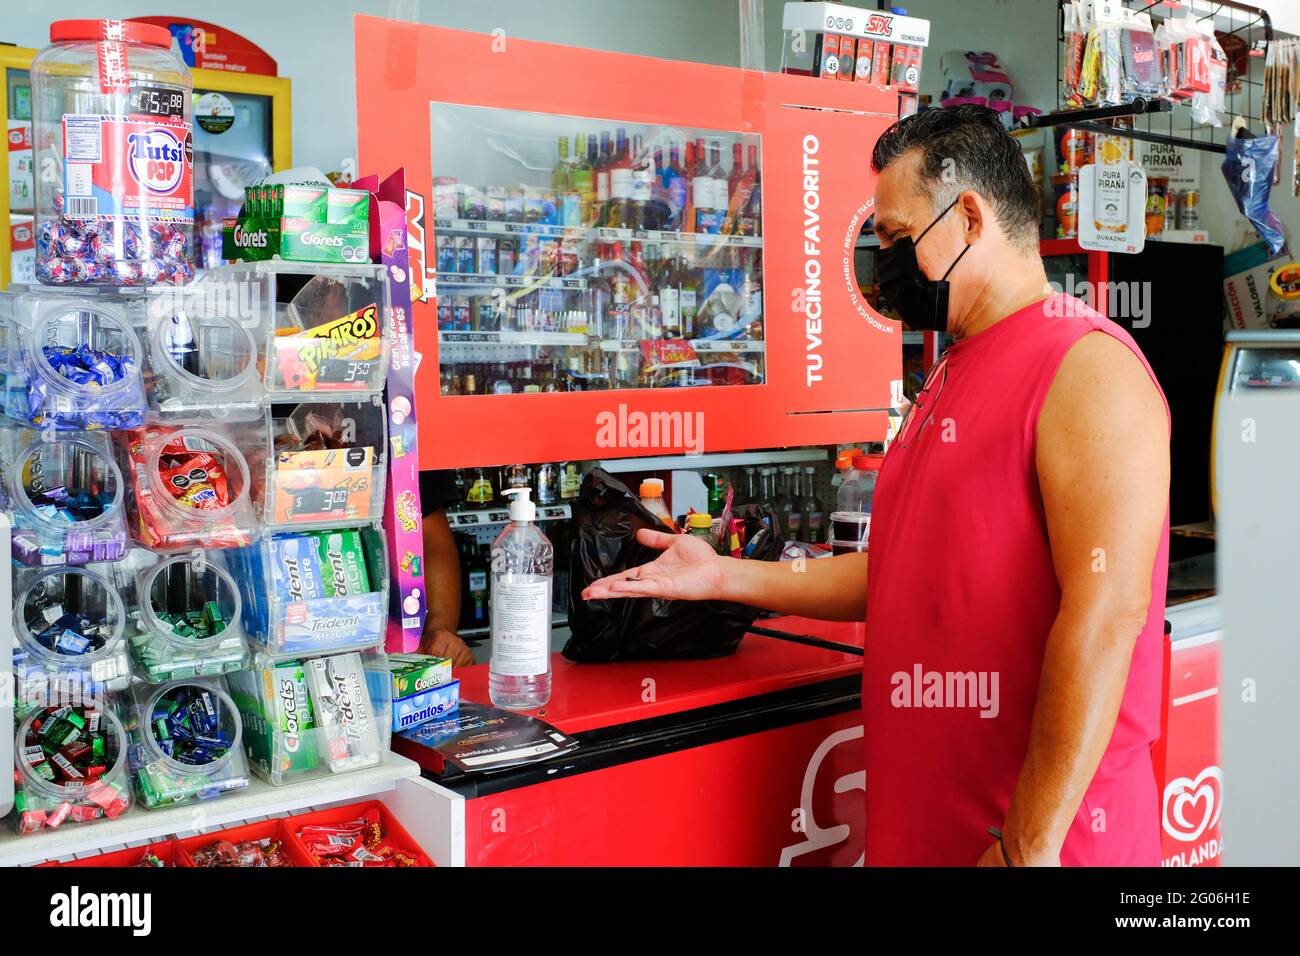 Uomo che acquista forniture in un piccolo negozio a Merida Messico Durante il Covid-19 Pandemic / si può osservare la precauzione misure adottate dal magazzino (separatore di plastica e gel igienizzante) Foto Stock